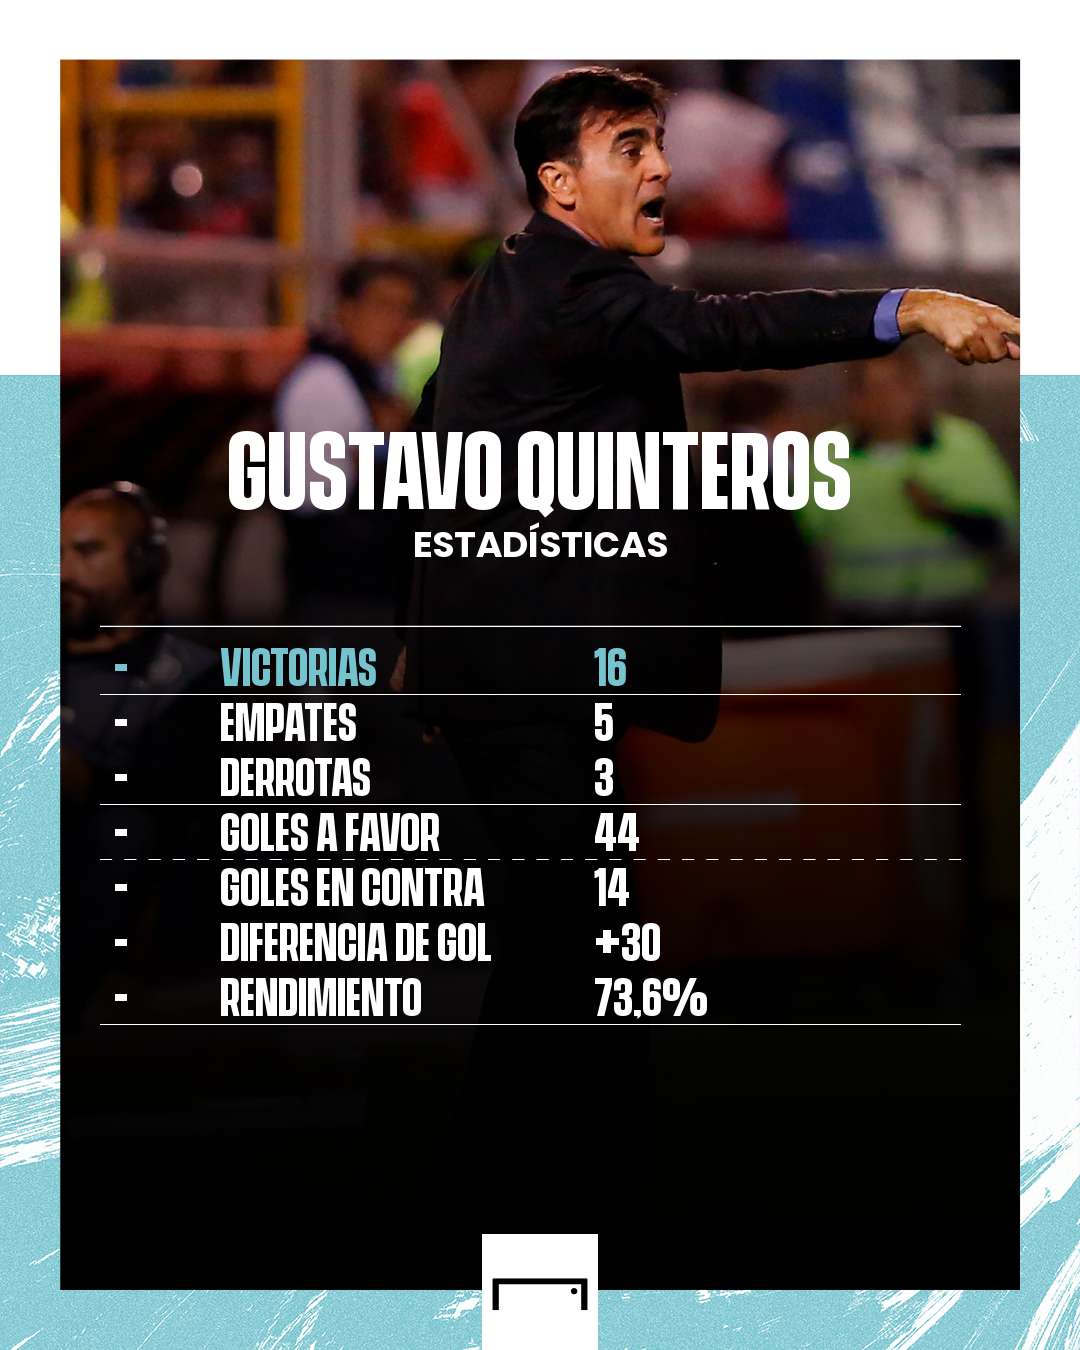 Gustavo Quinteros PS